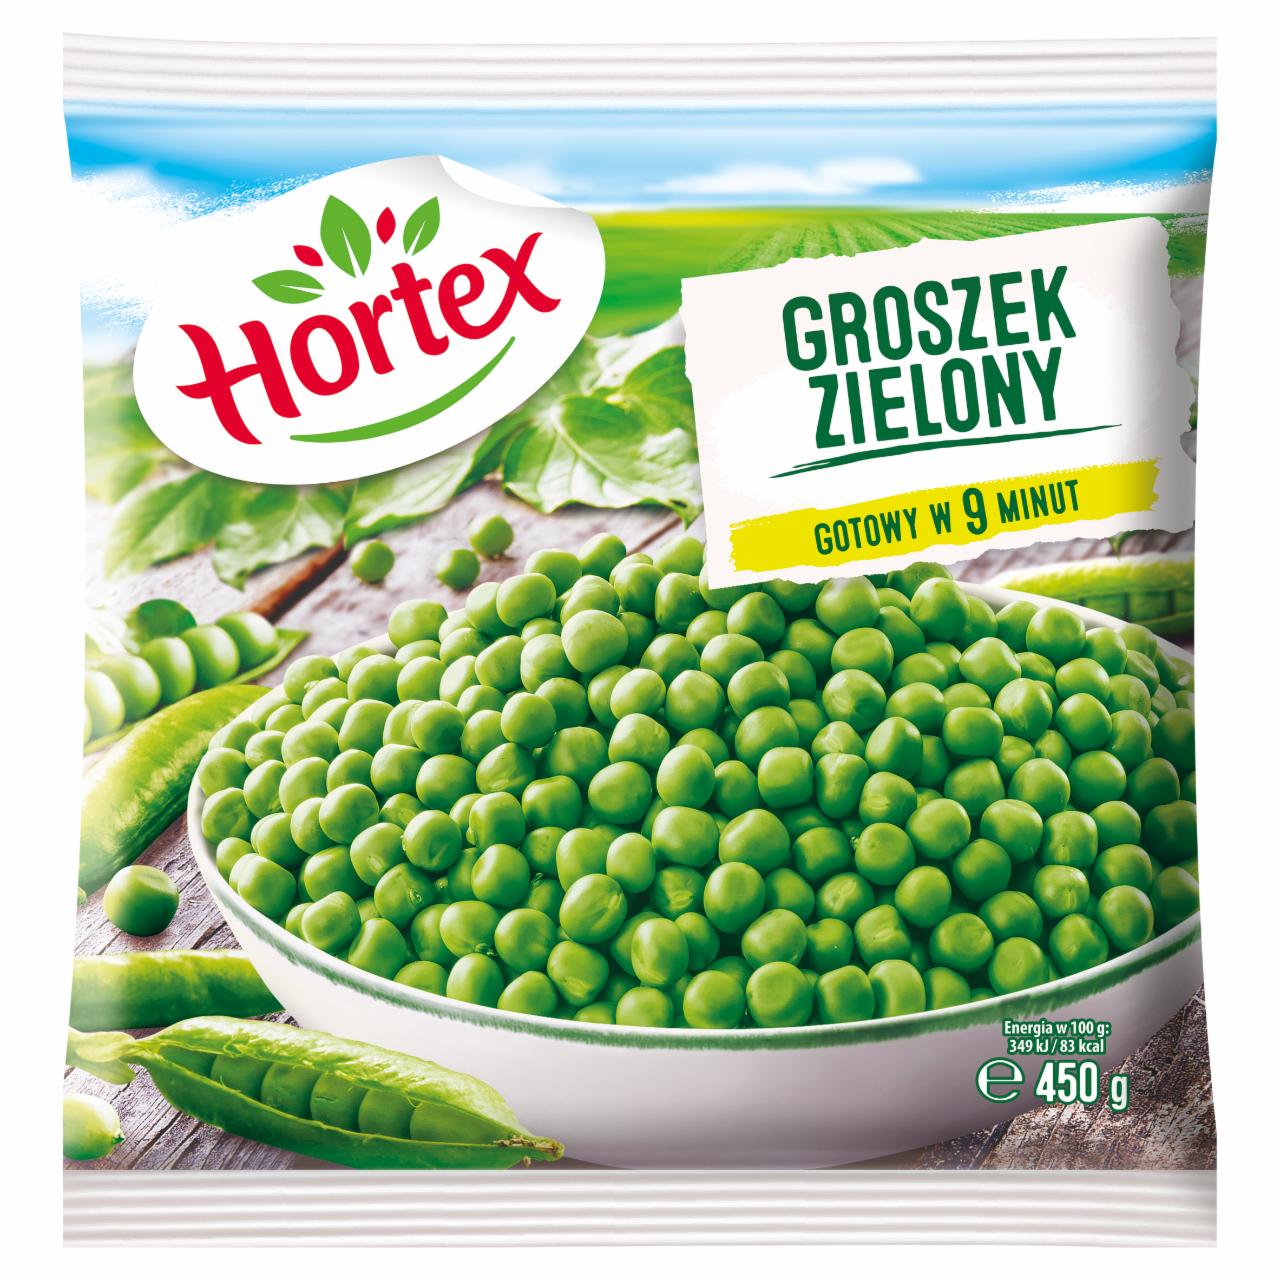 Zdjęcia - Hortex Groszek zielony 450 g